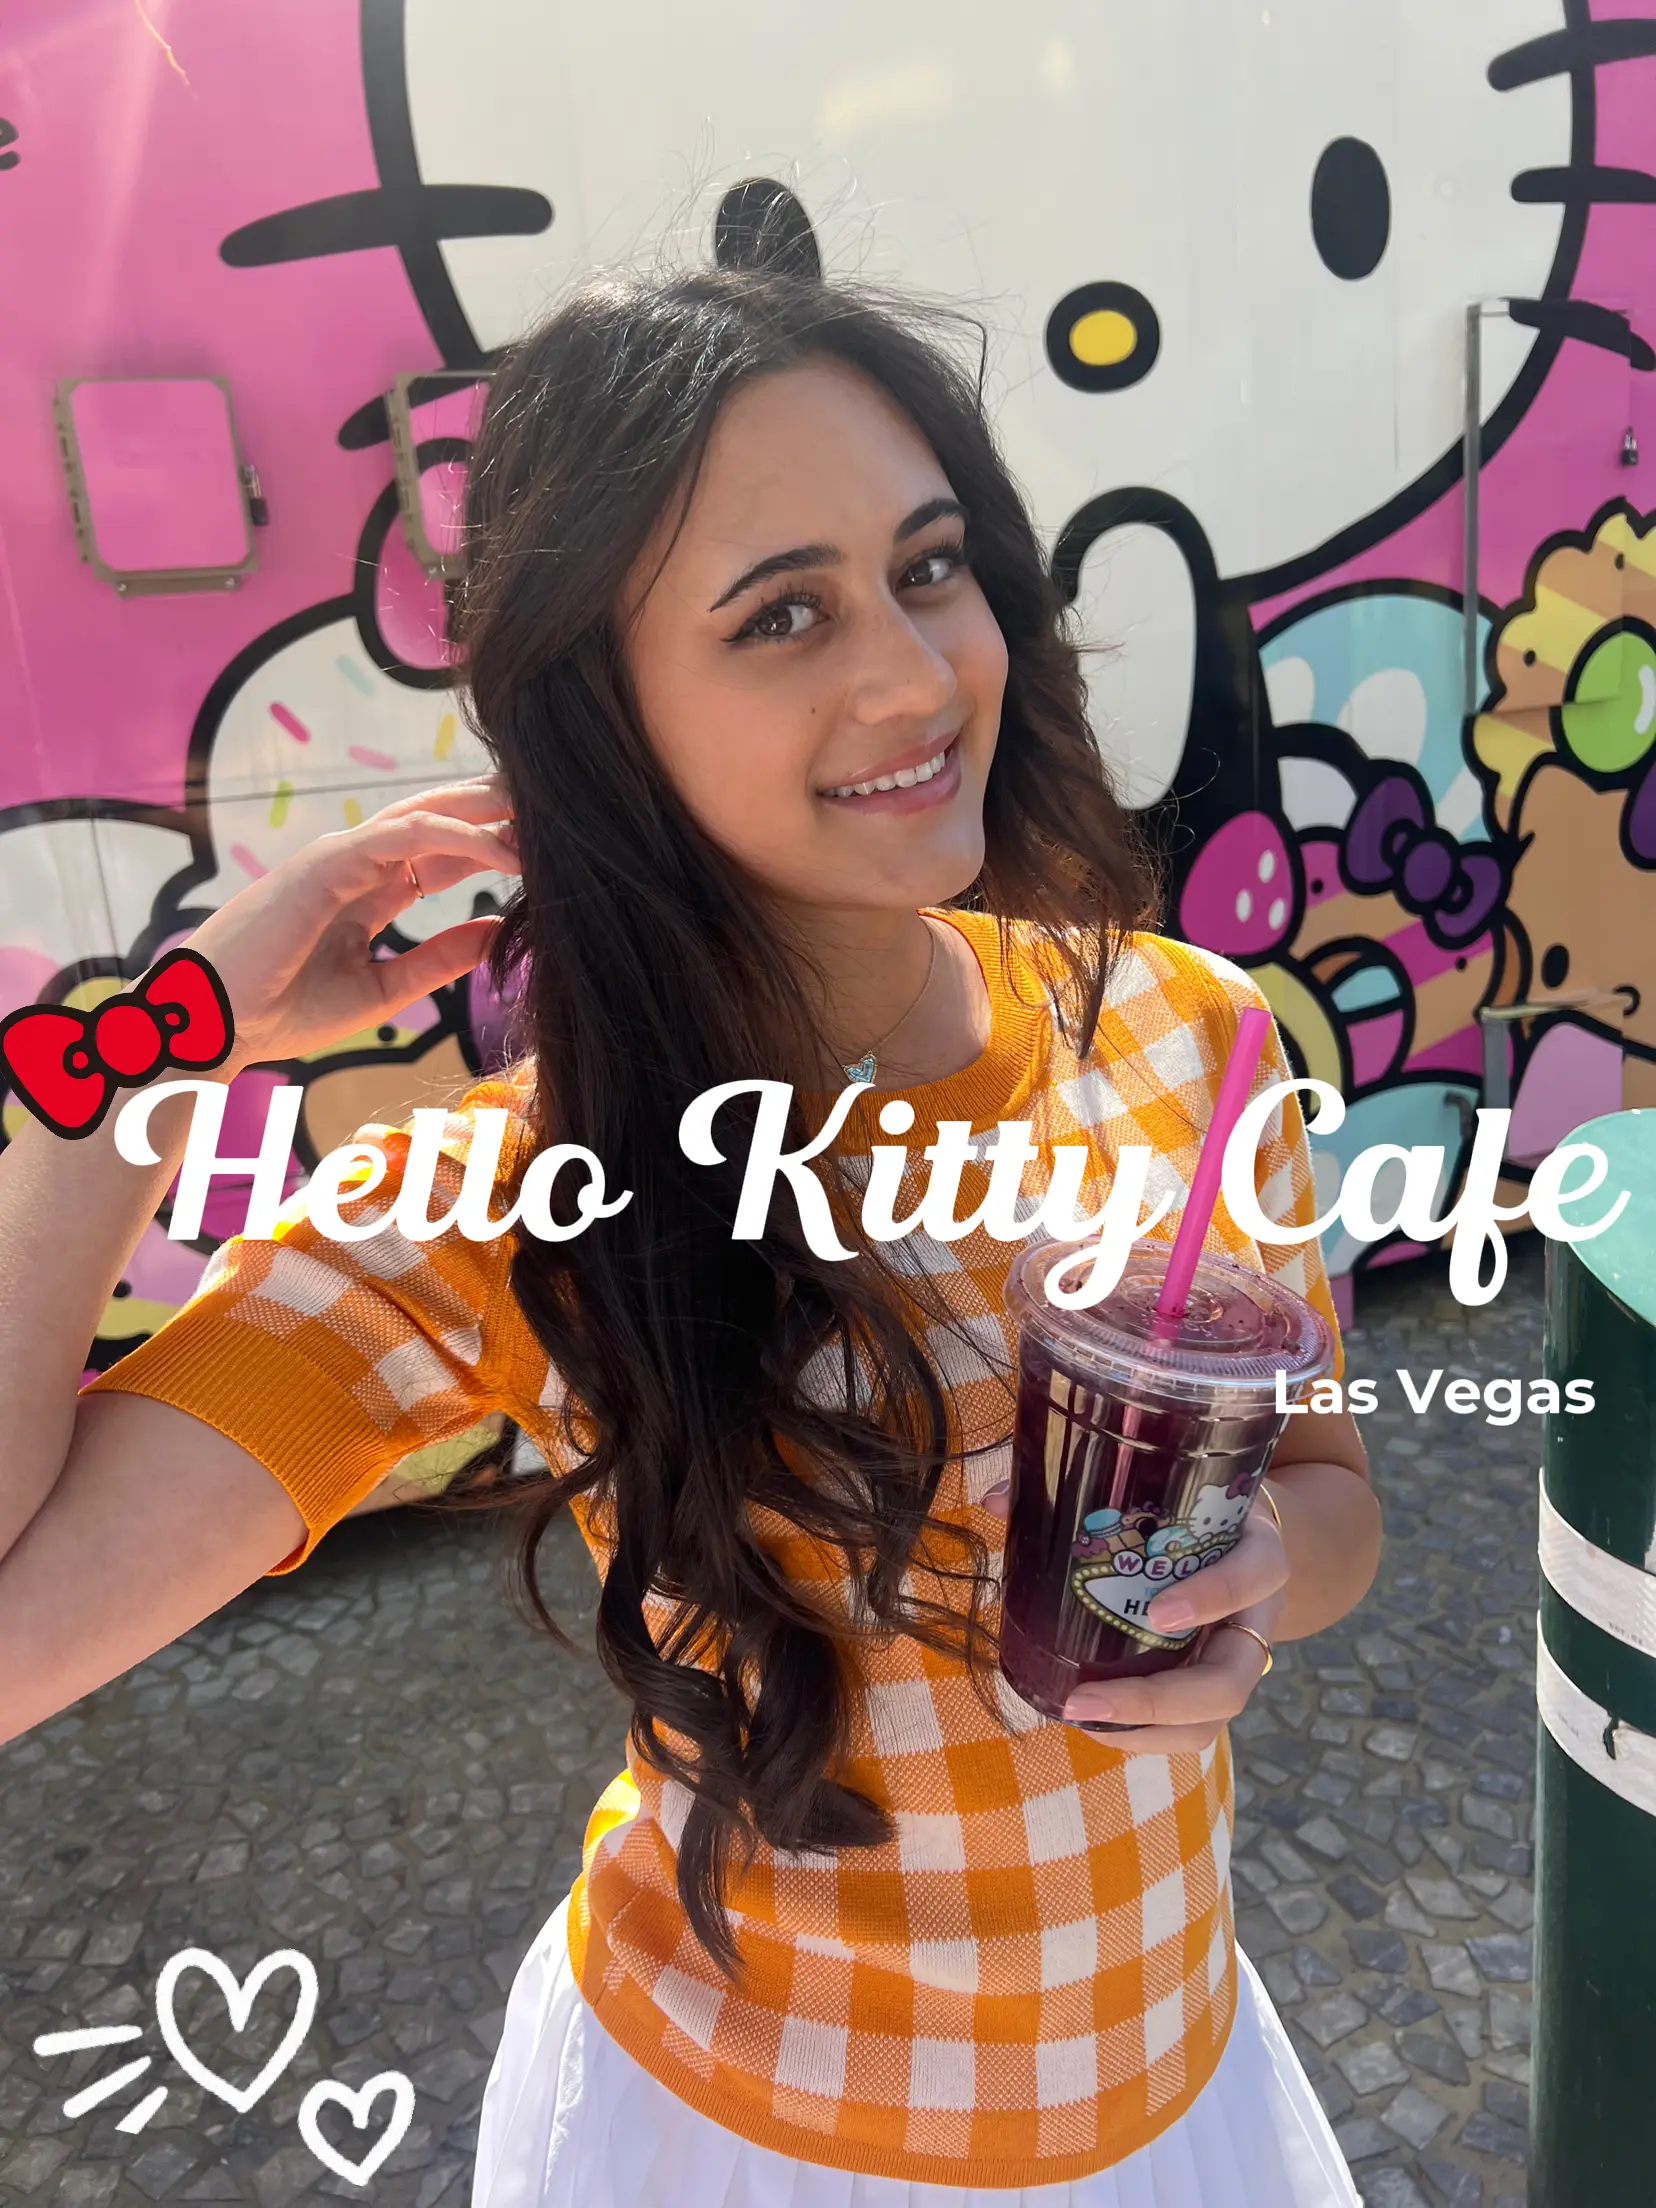 HELLO KITTY CAFE LAS VEGAS - The Strip - Menu, Prices & Restaurant